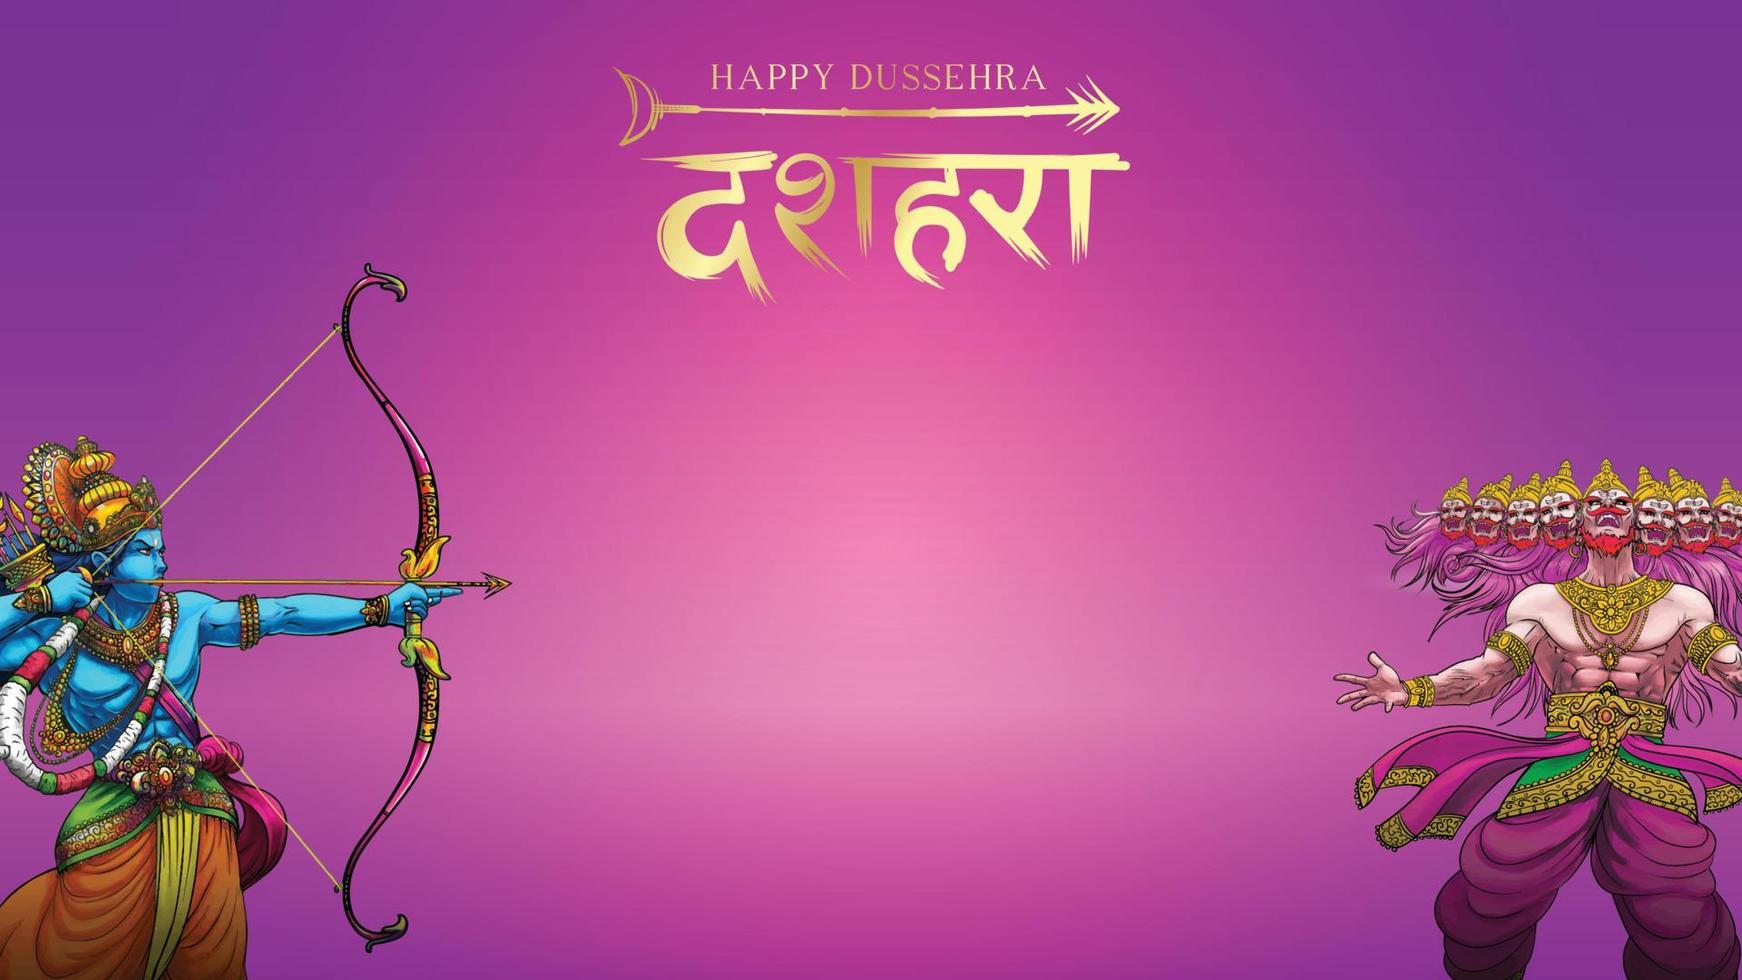 Lord Rama tötet Ravana beim Happy Dussehra Navratri Poster Festival in Indien. übersetzung dussehra vektor